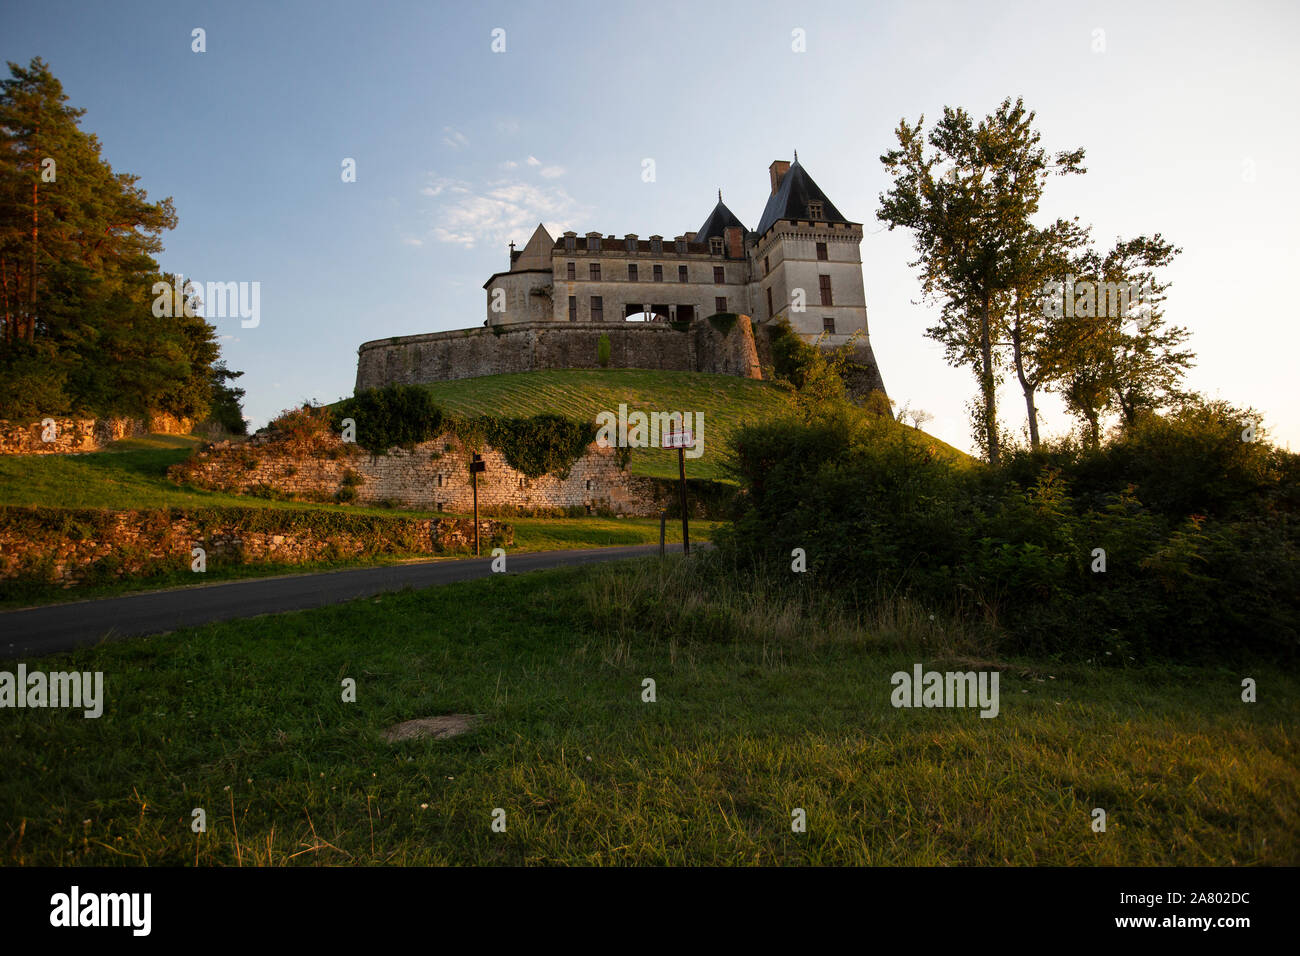 Château de Biron, il castello medievale, verso il confine meridionale della regione della Dordogne con Lot-et-Garonne e la città medievale di Monpazier, Francia. Foto Stock